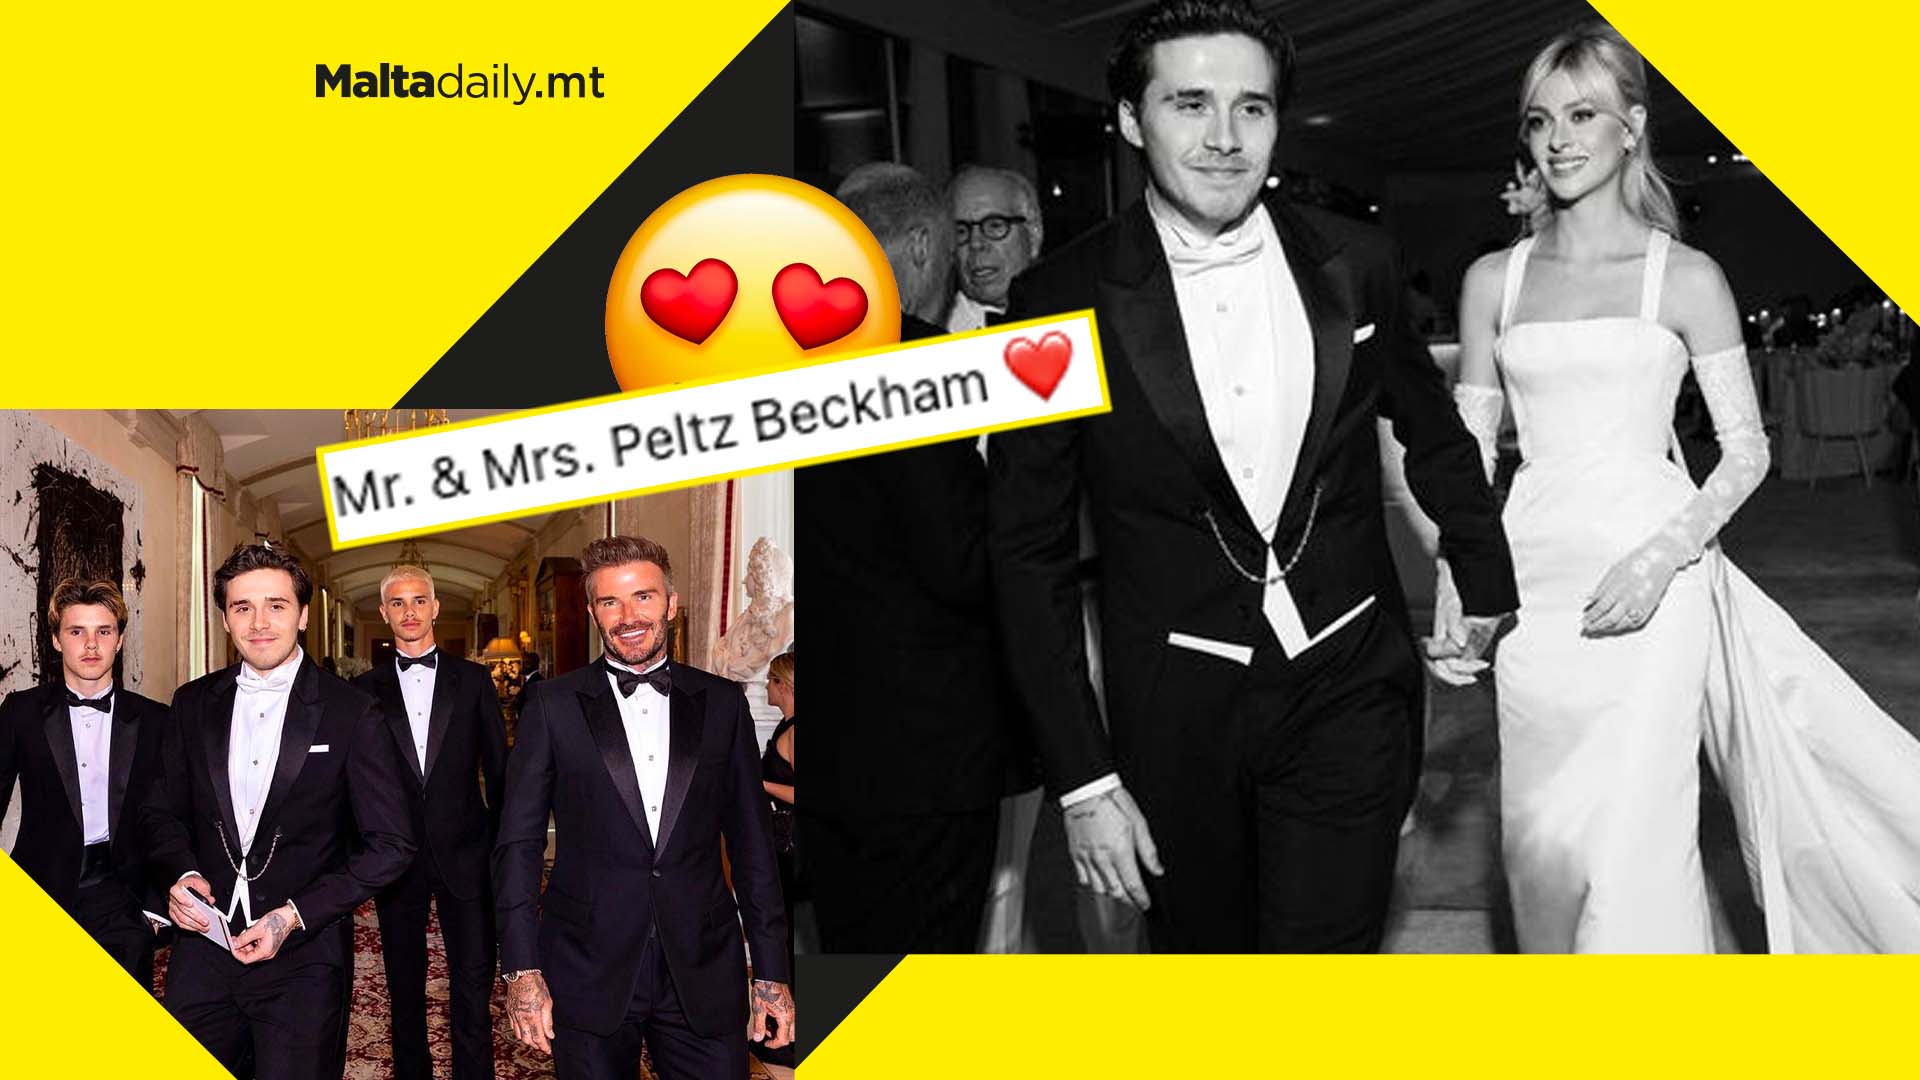 David Beckham’s eldest son Brooklyn just got married